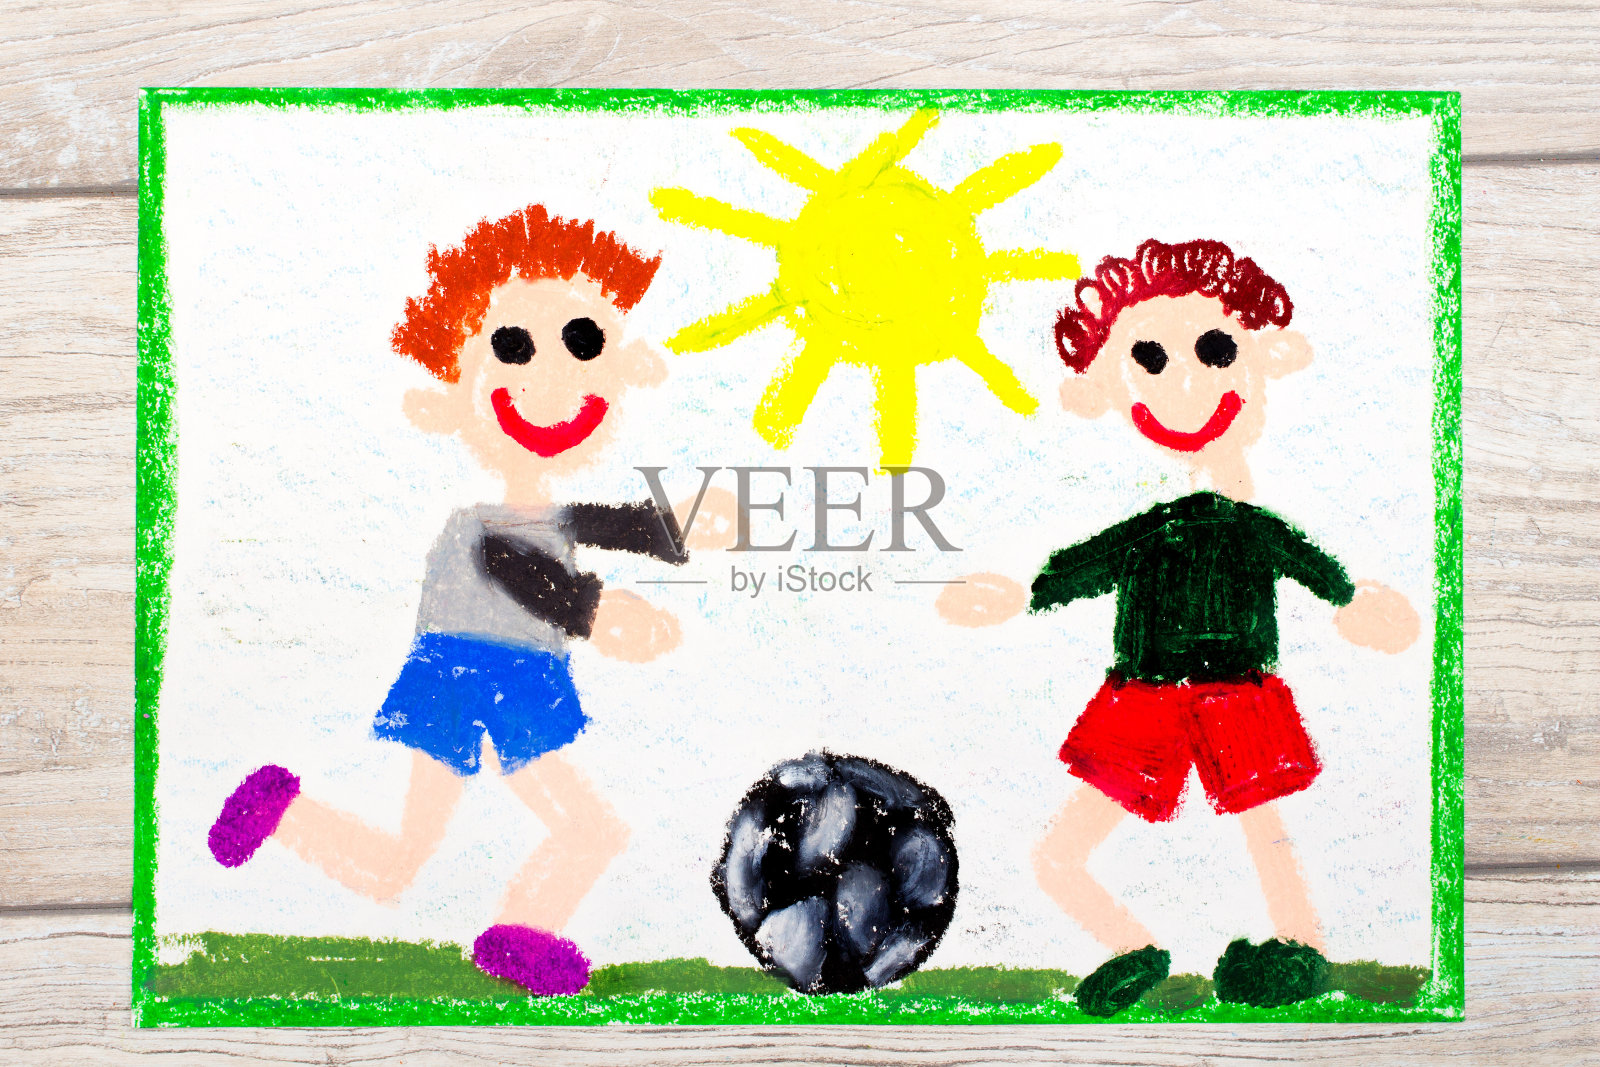 彩色图画照片:两个小男孩在踢足球。足球比赛照片摄影图片